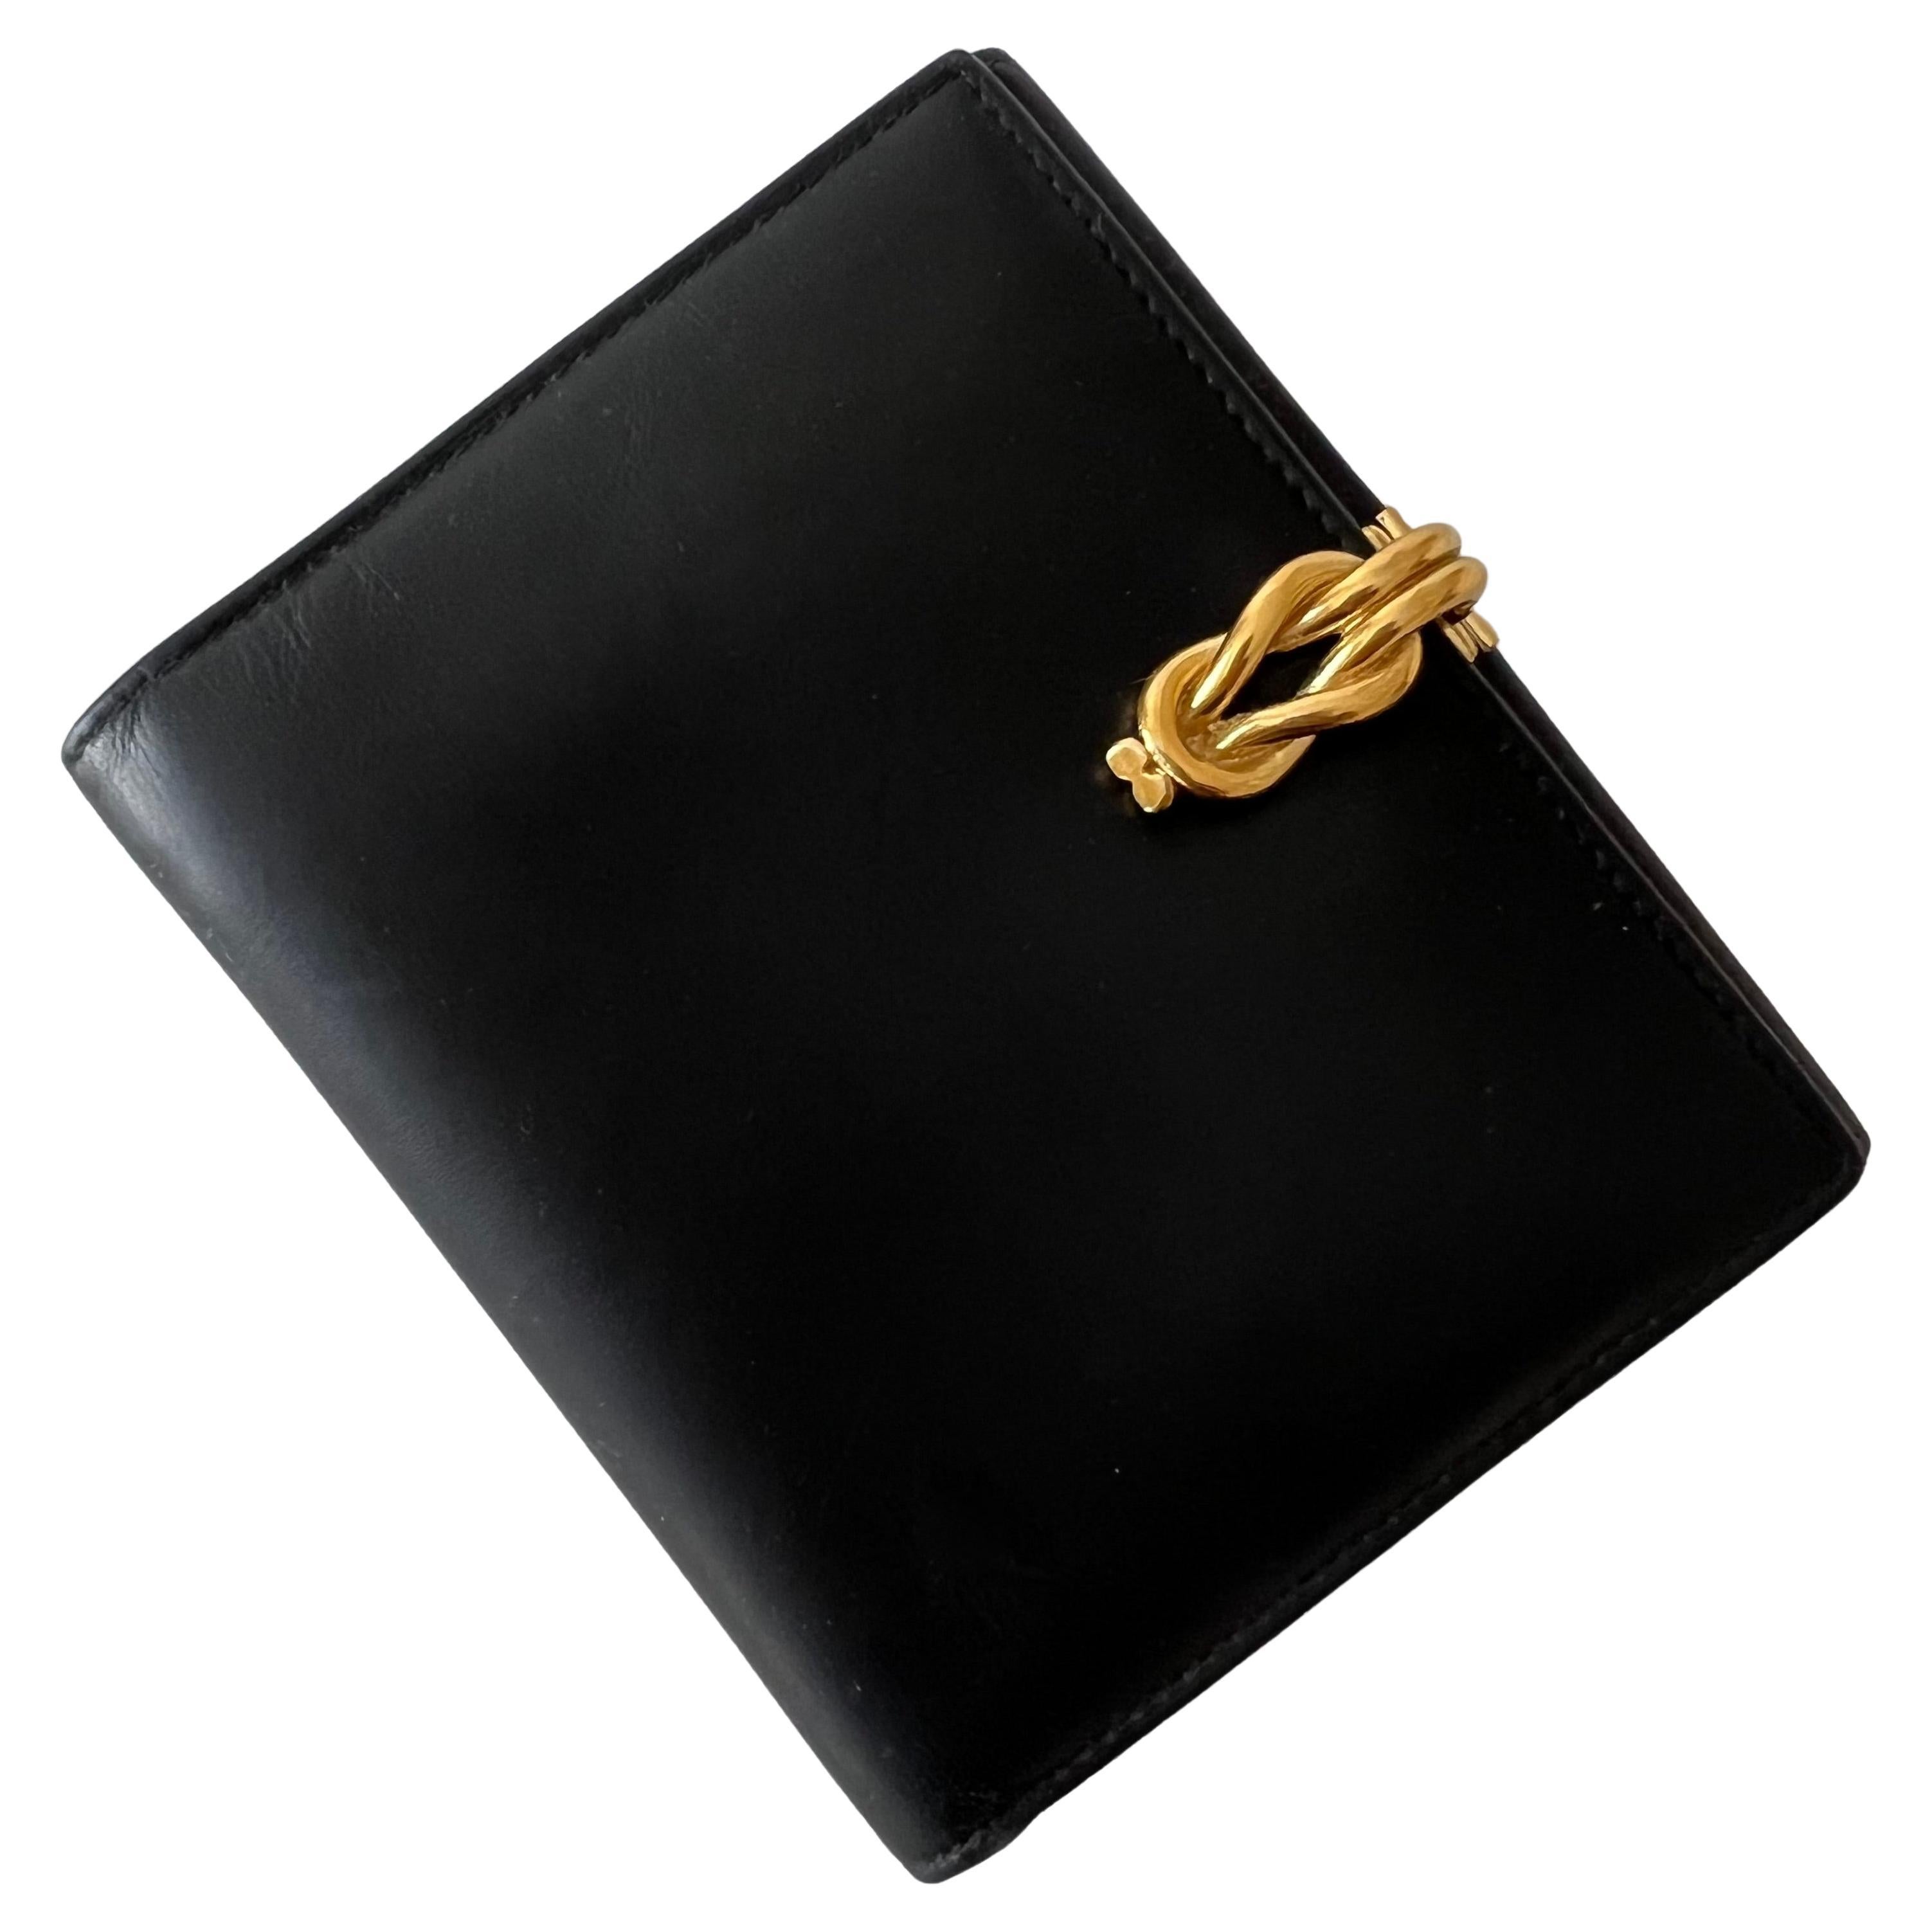 Italienische Gucci-Brieftasche aus Leder mit goldenem Knott-Verschluss und Münzhalter